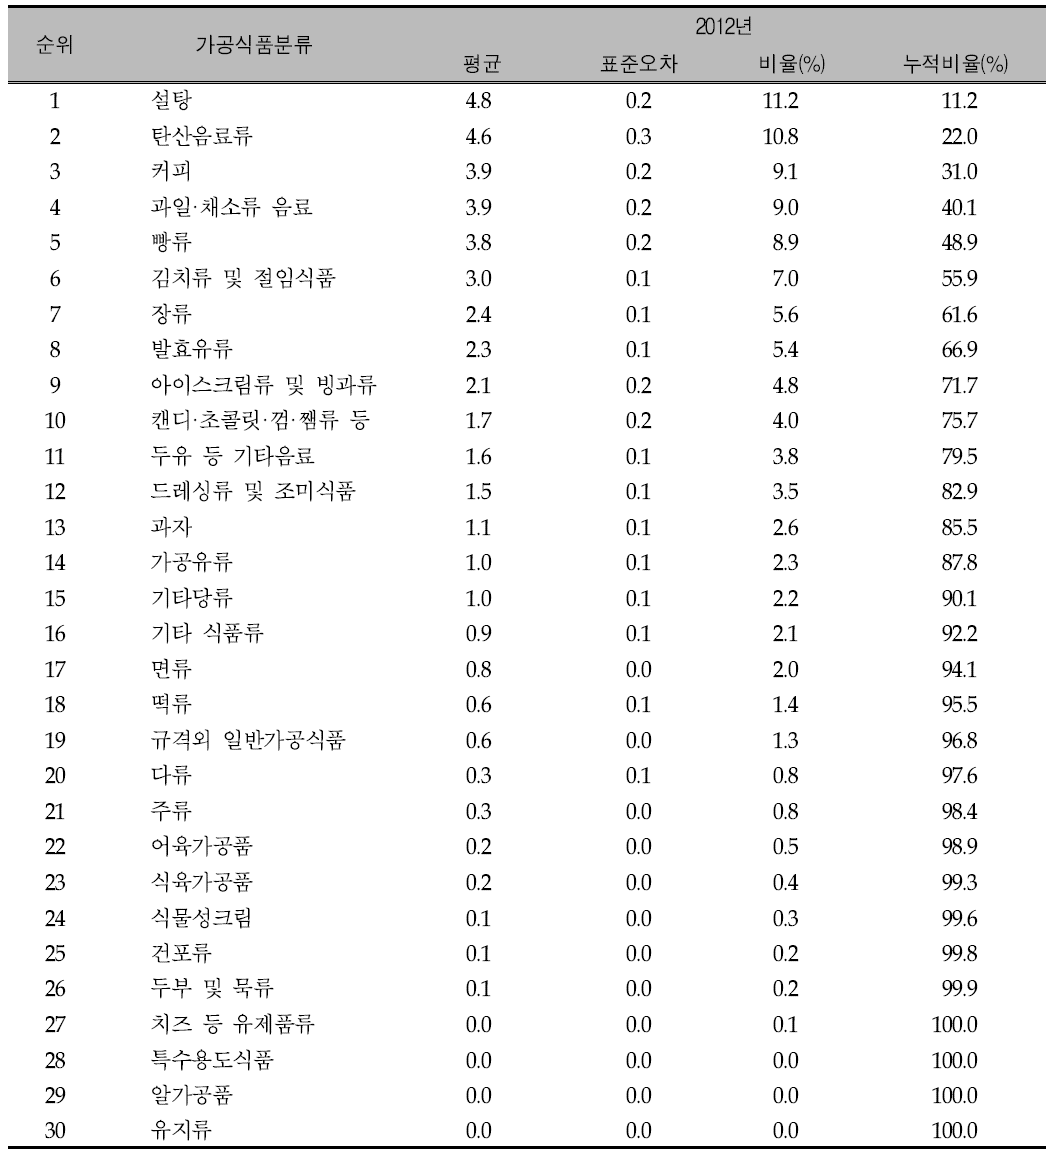 가공식품 30군의 연도별 주요 당류 급원 식품 순위: 국민건강영양조사 2012년